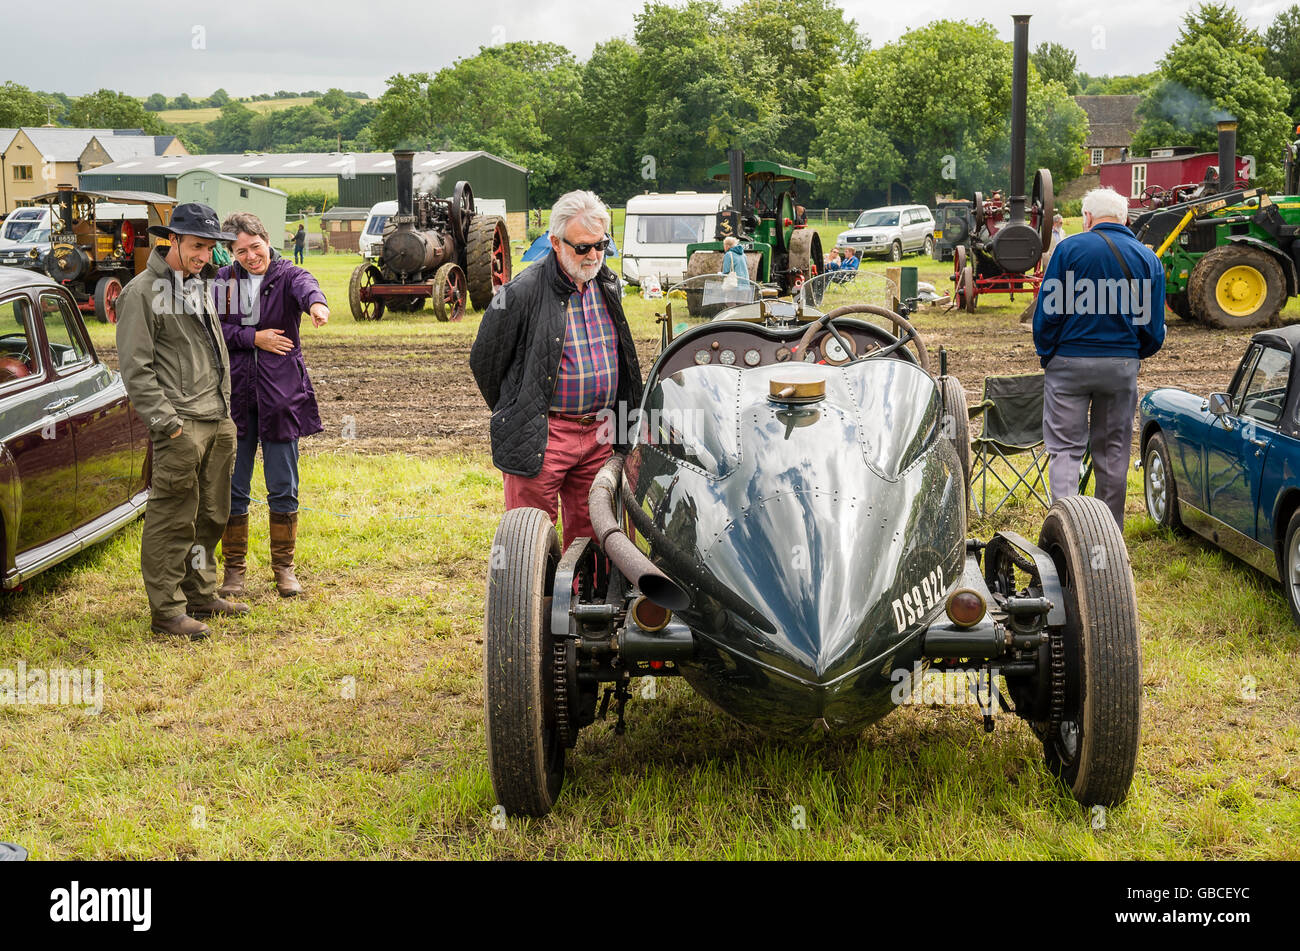 Un rare American LaFrance type course de voiture de sport sur show en Angleterre Banque D'Images